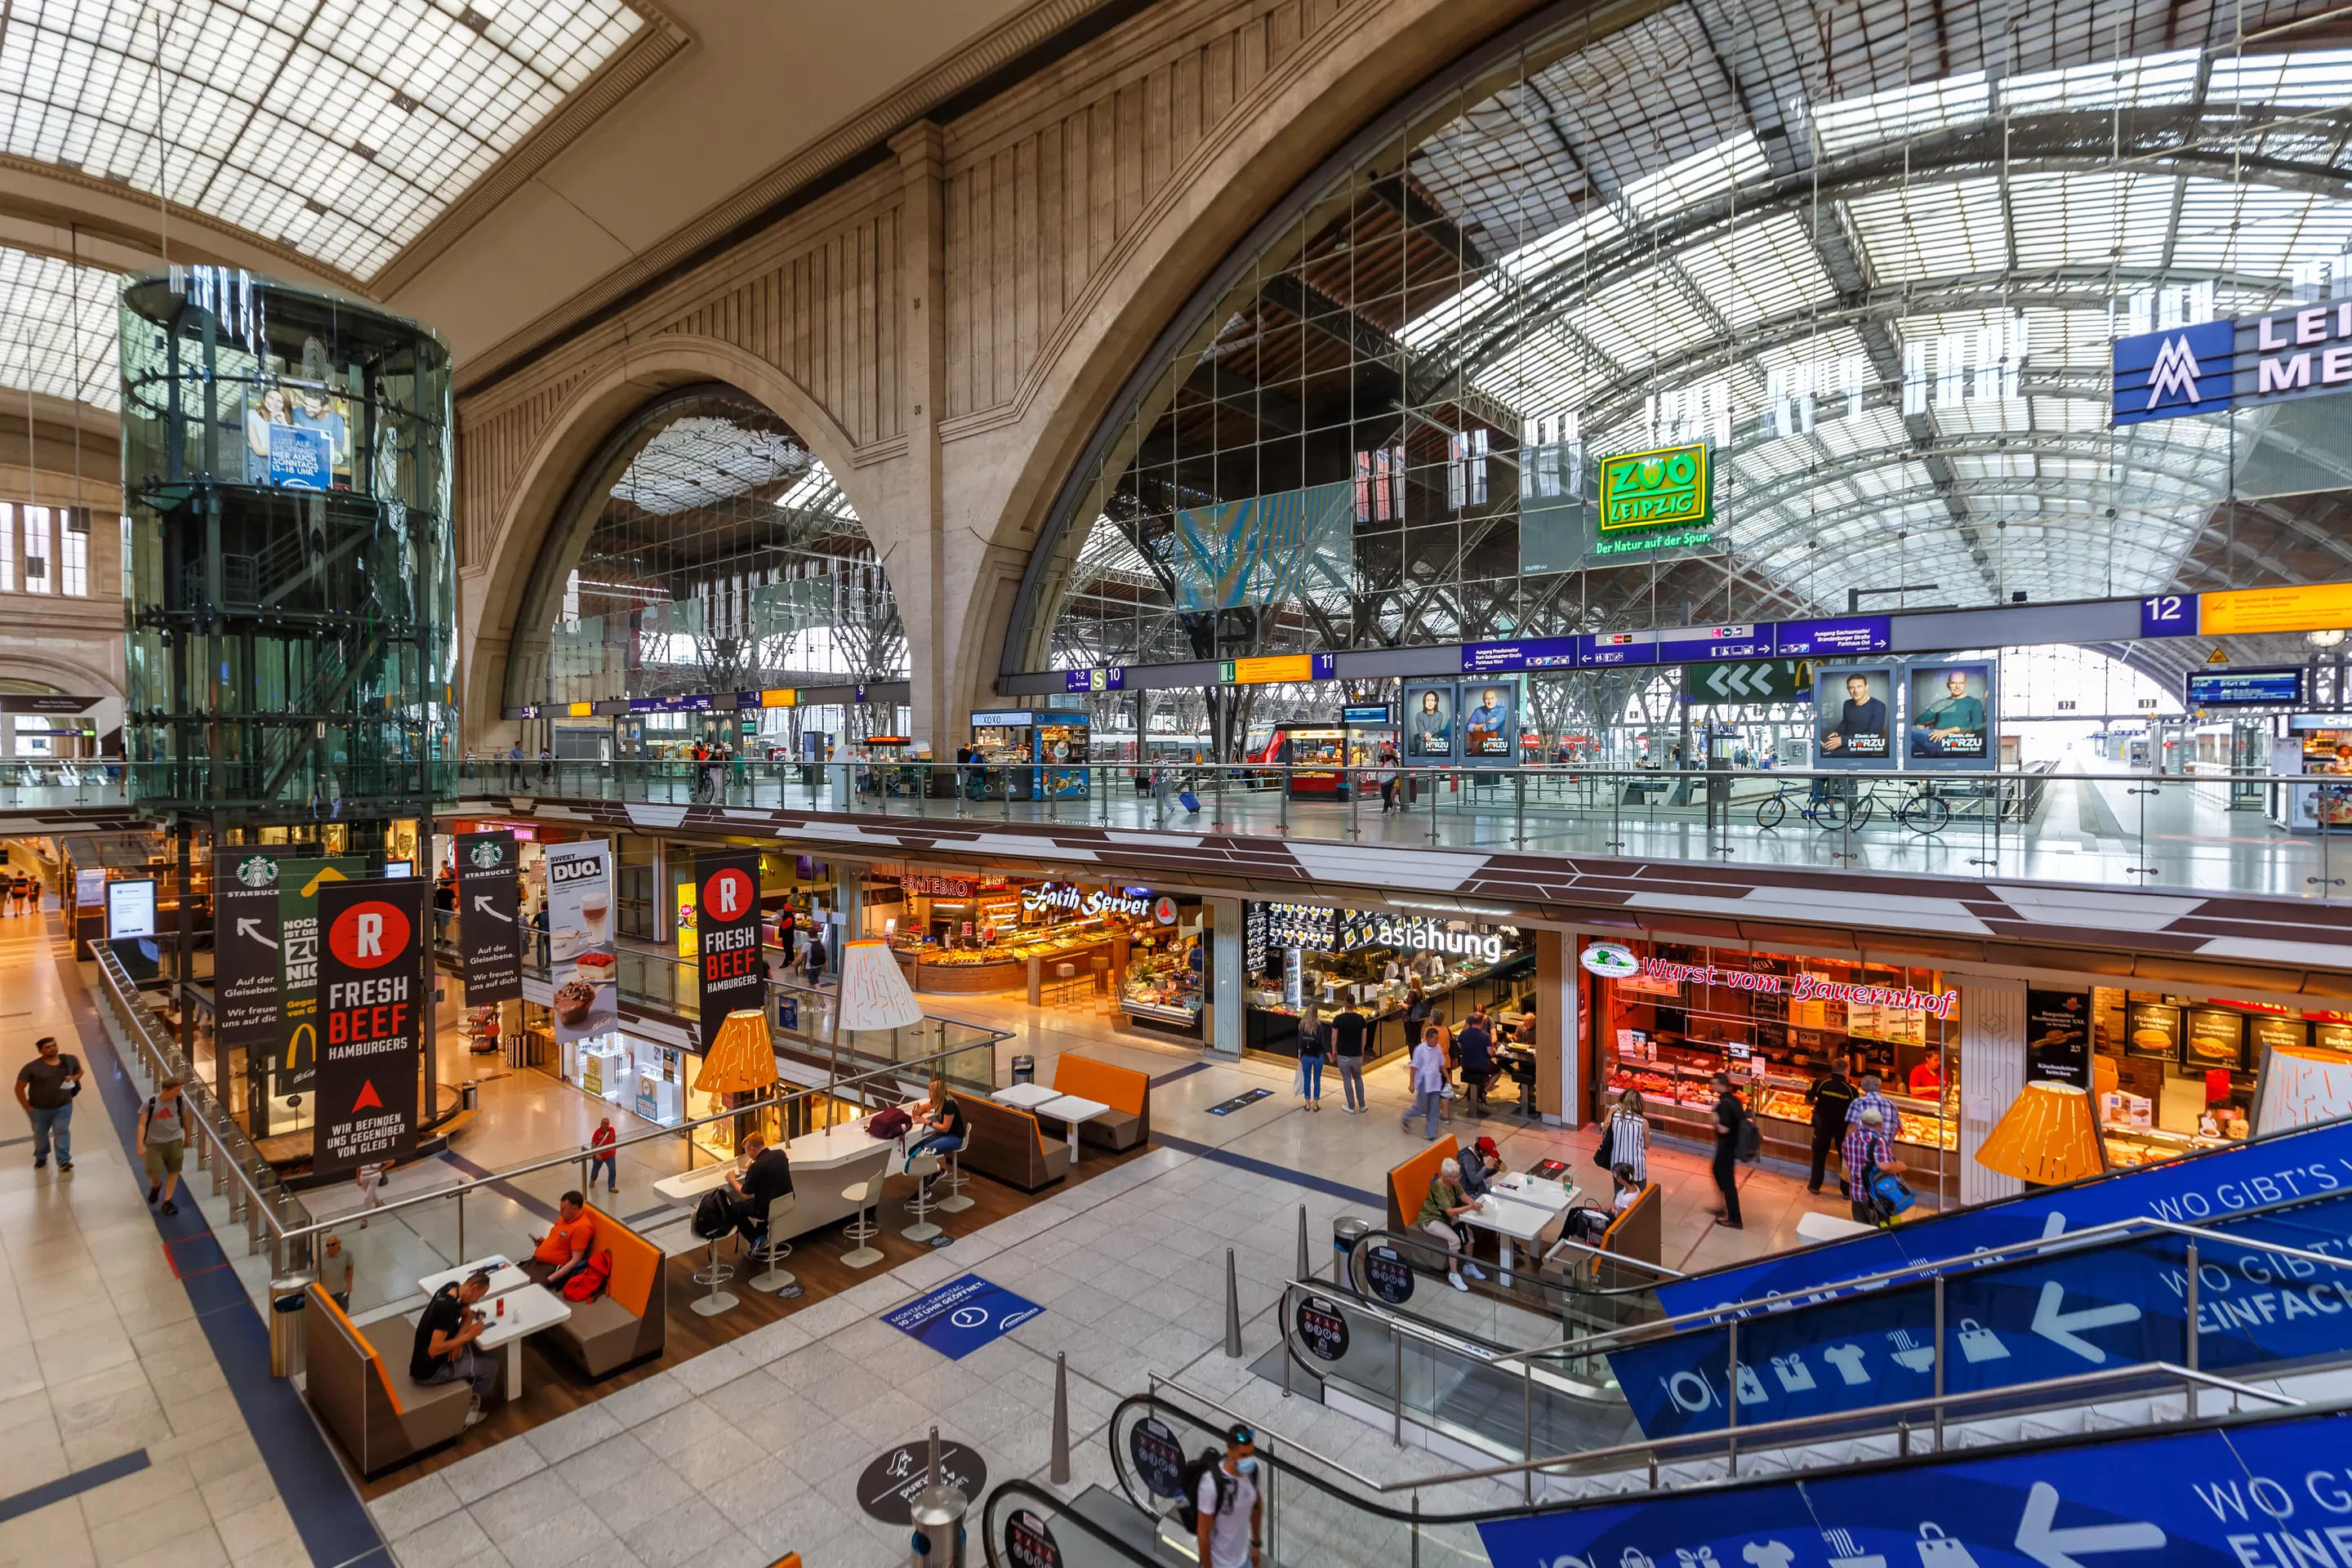 Hauptbahnhof Overview